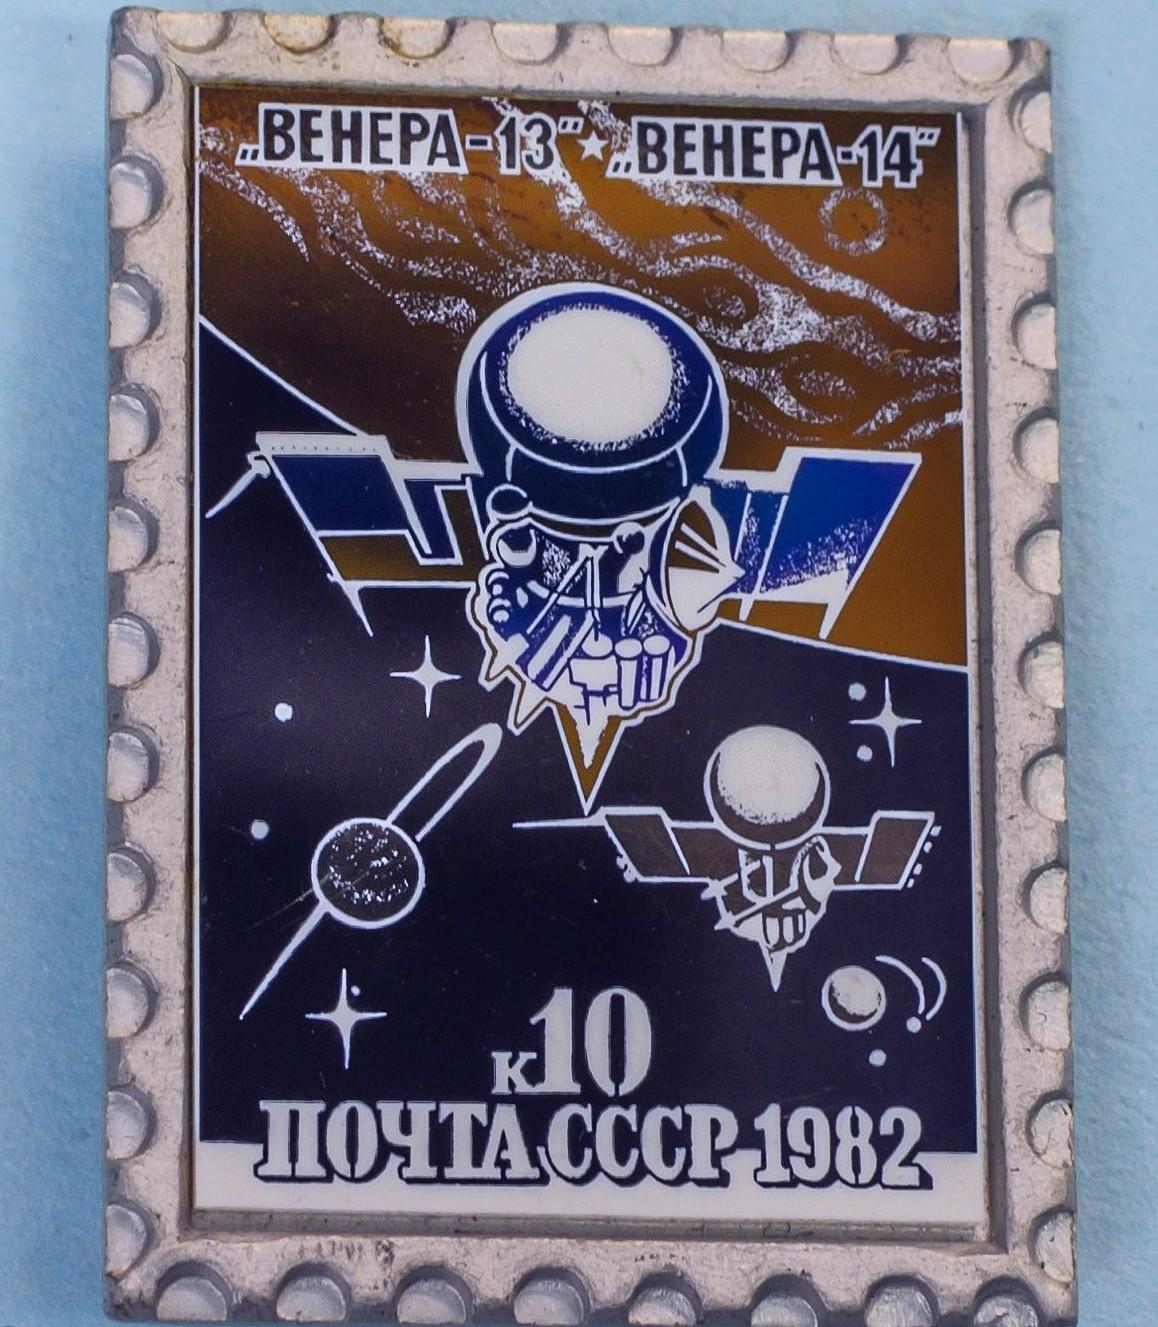 Космос (1092). Венера-13, Венера -14. ПОЧТА СССР. 10 к. 1982 г. 1